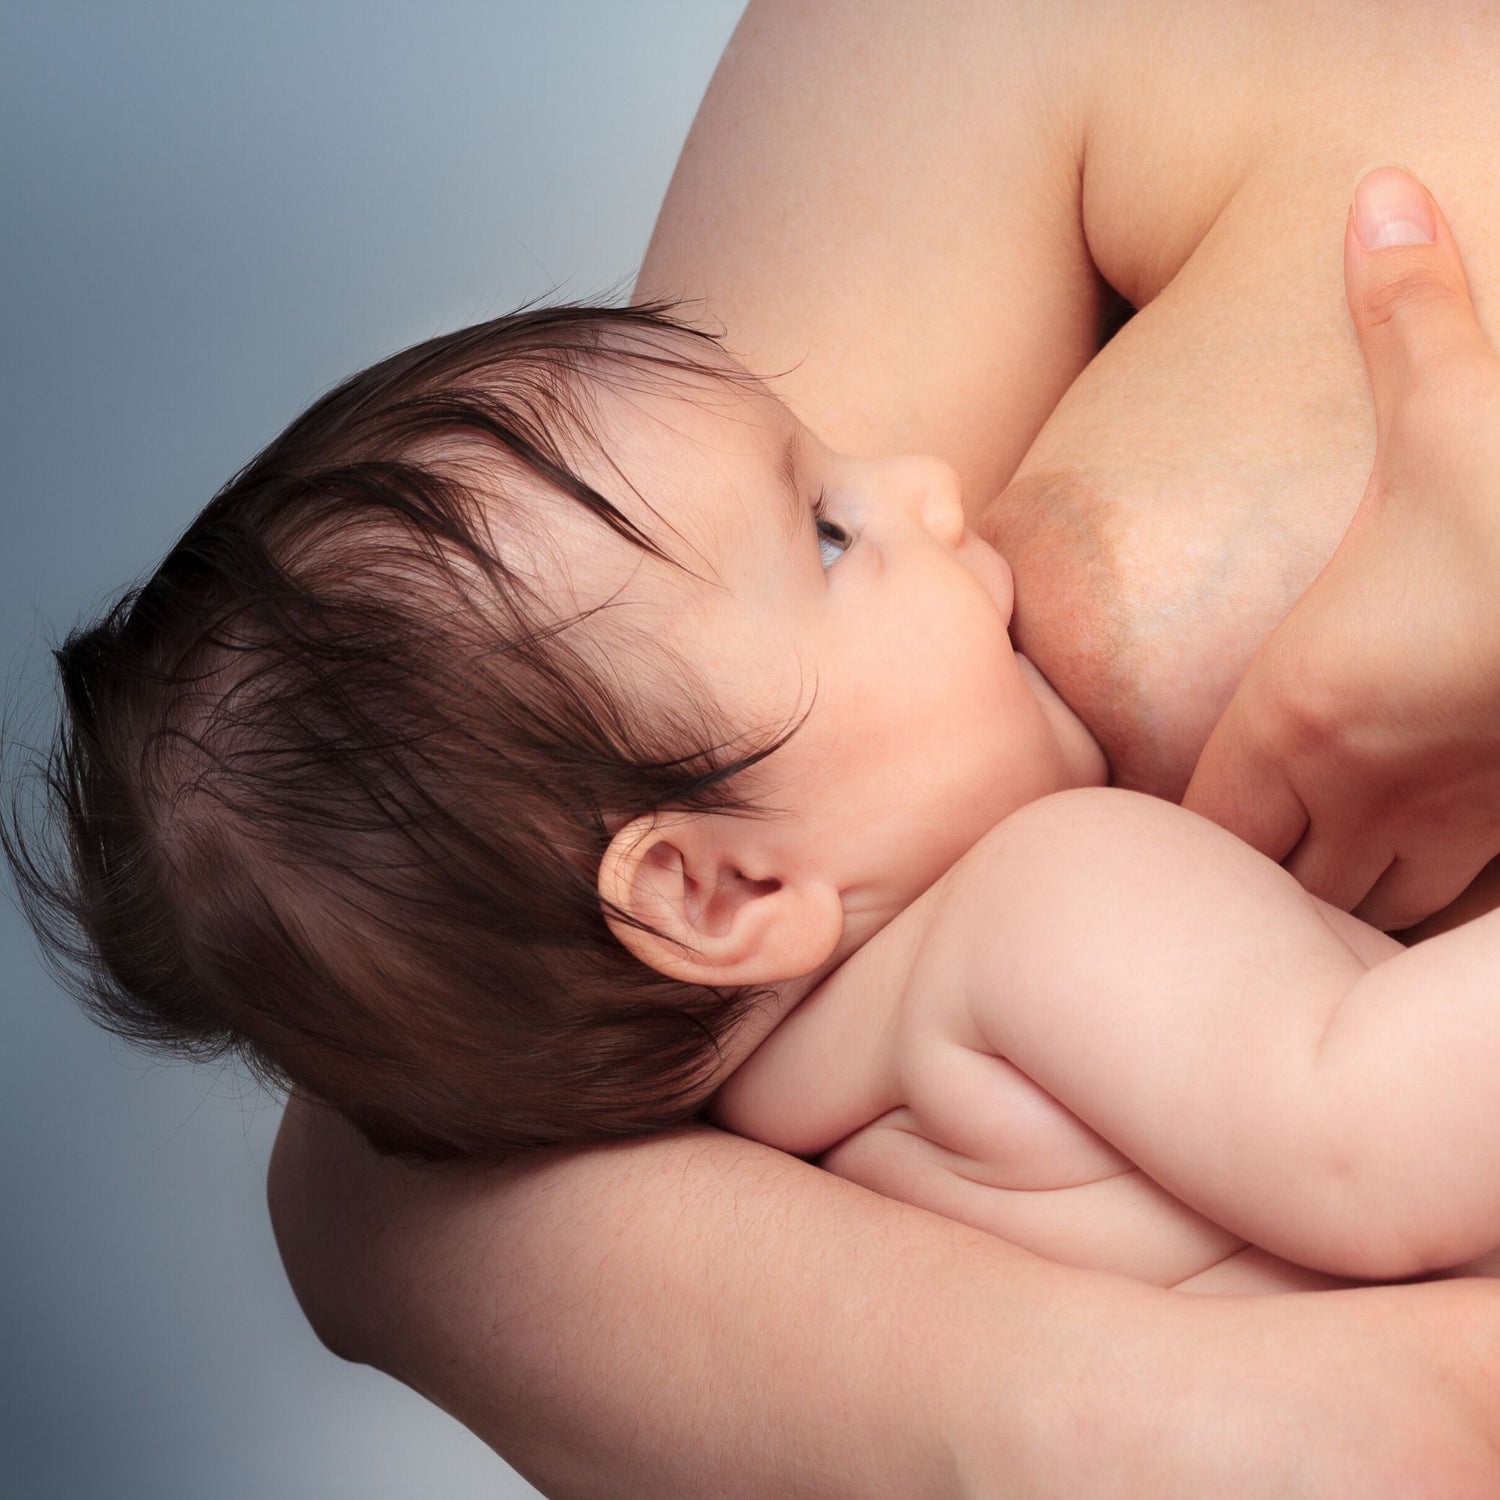 videocorso preparto e videocorso allattamento online: come allattare al seno, come attaccare il neonato correttamente al seno e le migliori posizioni per allattare